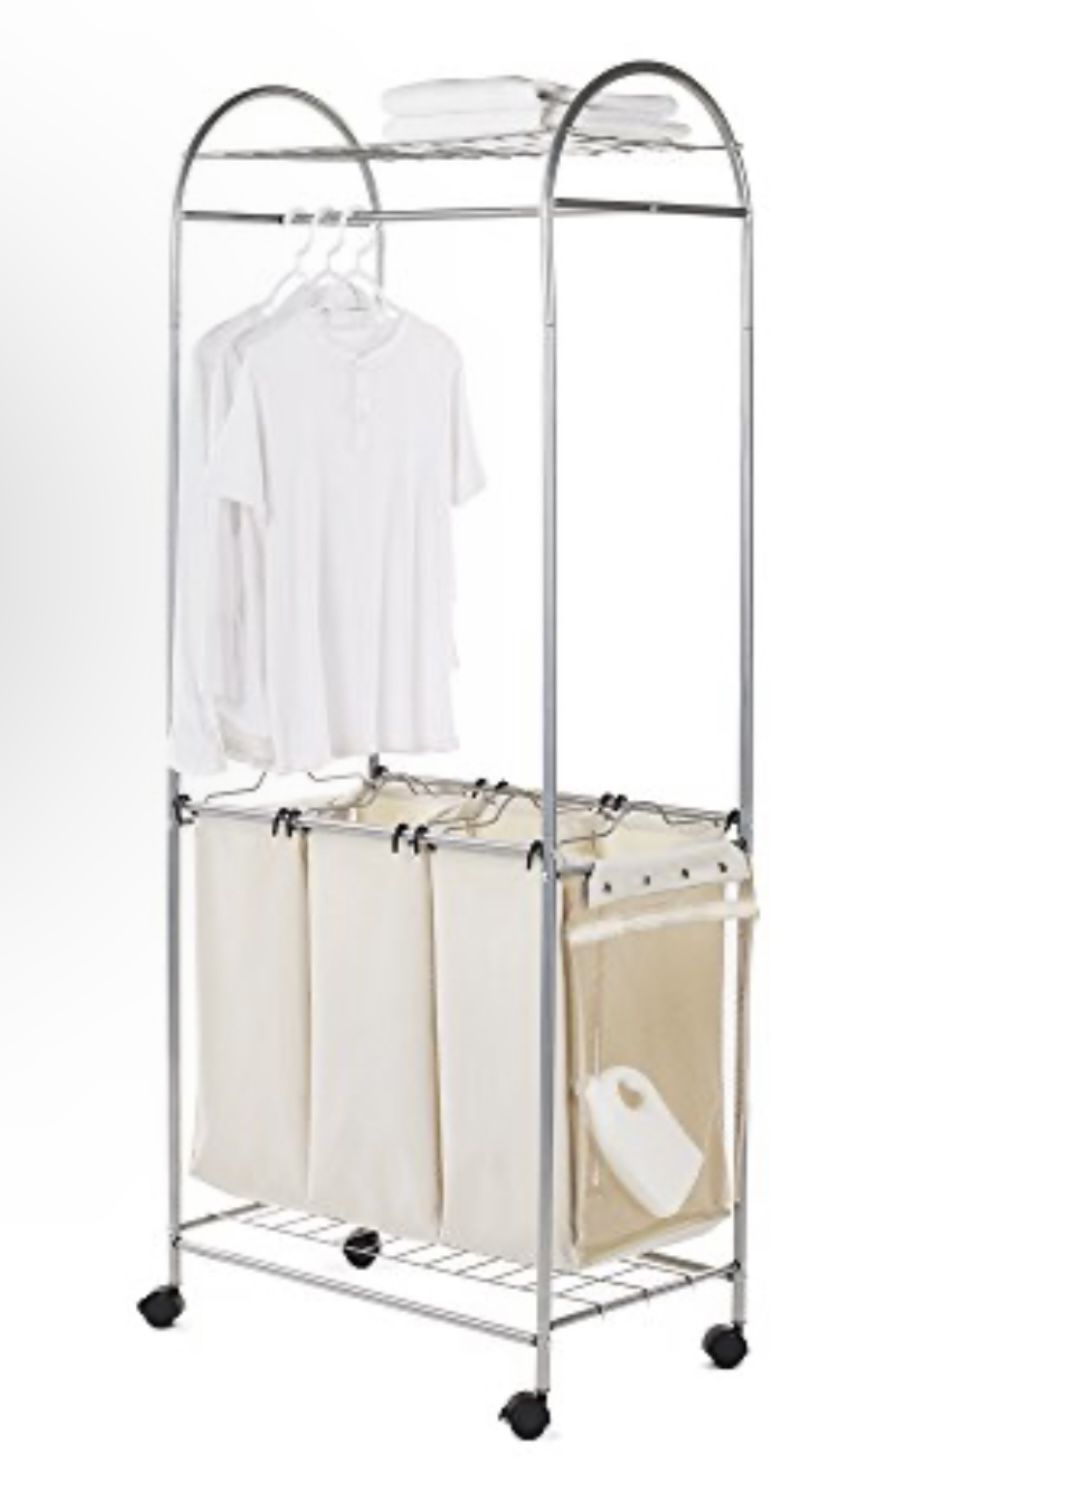 Garment Rack /shelves / 3 Hanging Laundry Bags 